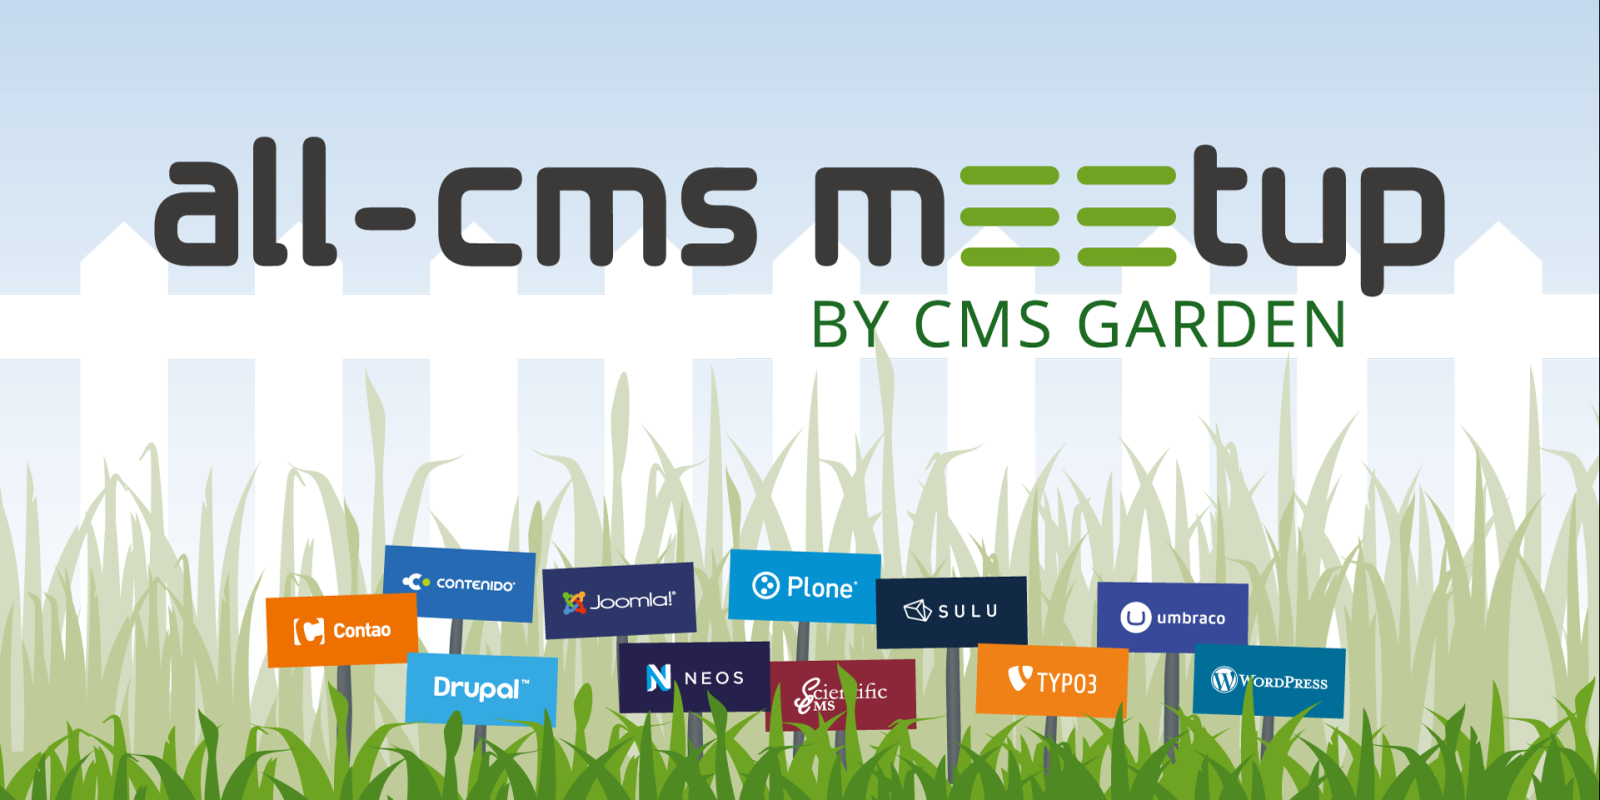 all-cms meetup by CMS Garden, Hintergrundillustration: CMS-Logos als Schilder in einer Wiese vor einem Gartenzaun und blauem Himmel